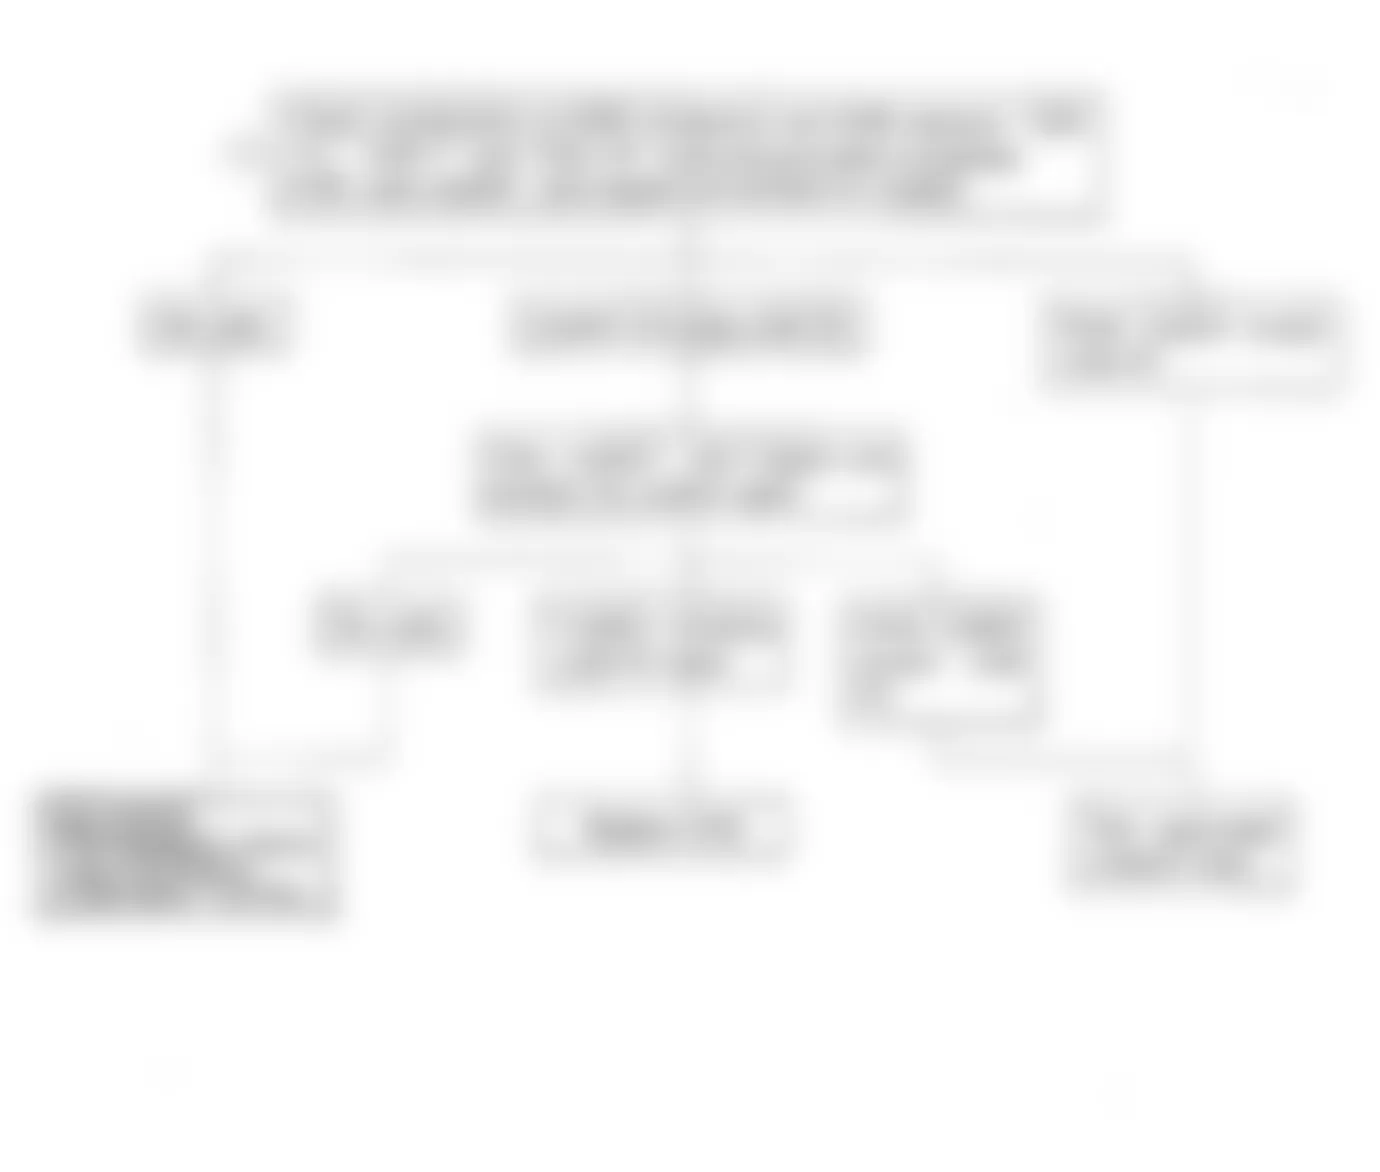 Isuzu Amigo S 1992 - Component Locations -  Code No. 52 Flow Chart, Faulty ECM Ram